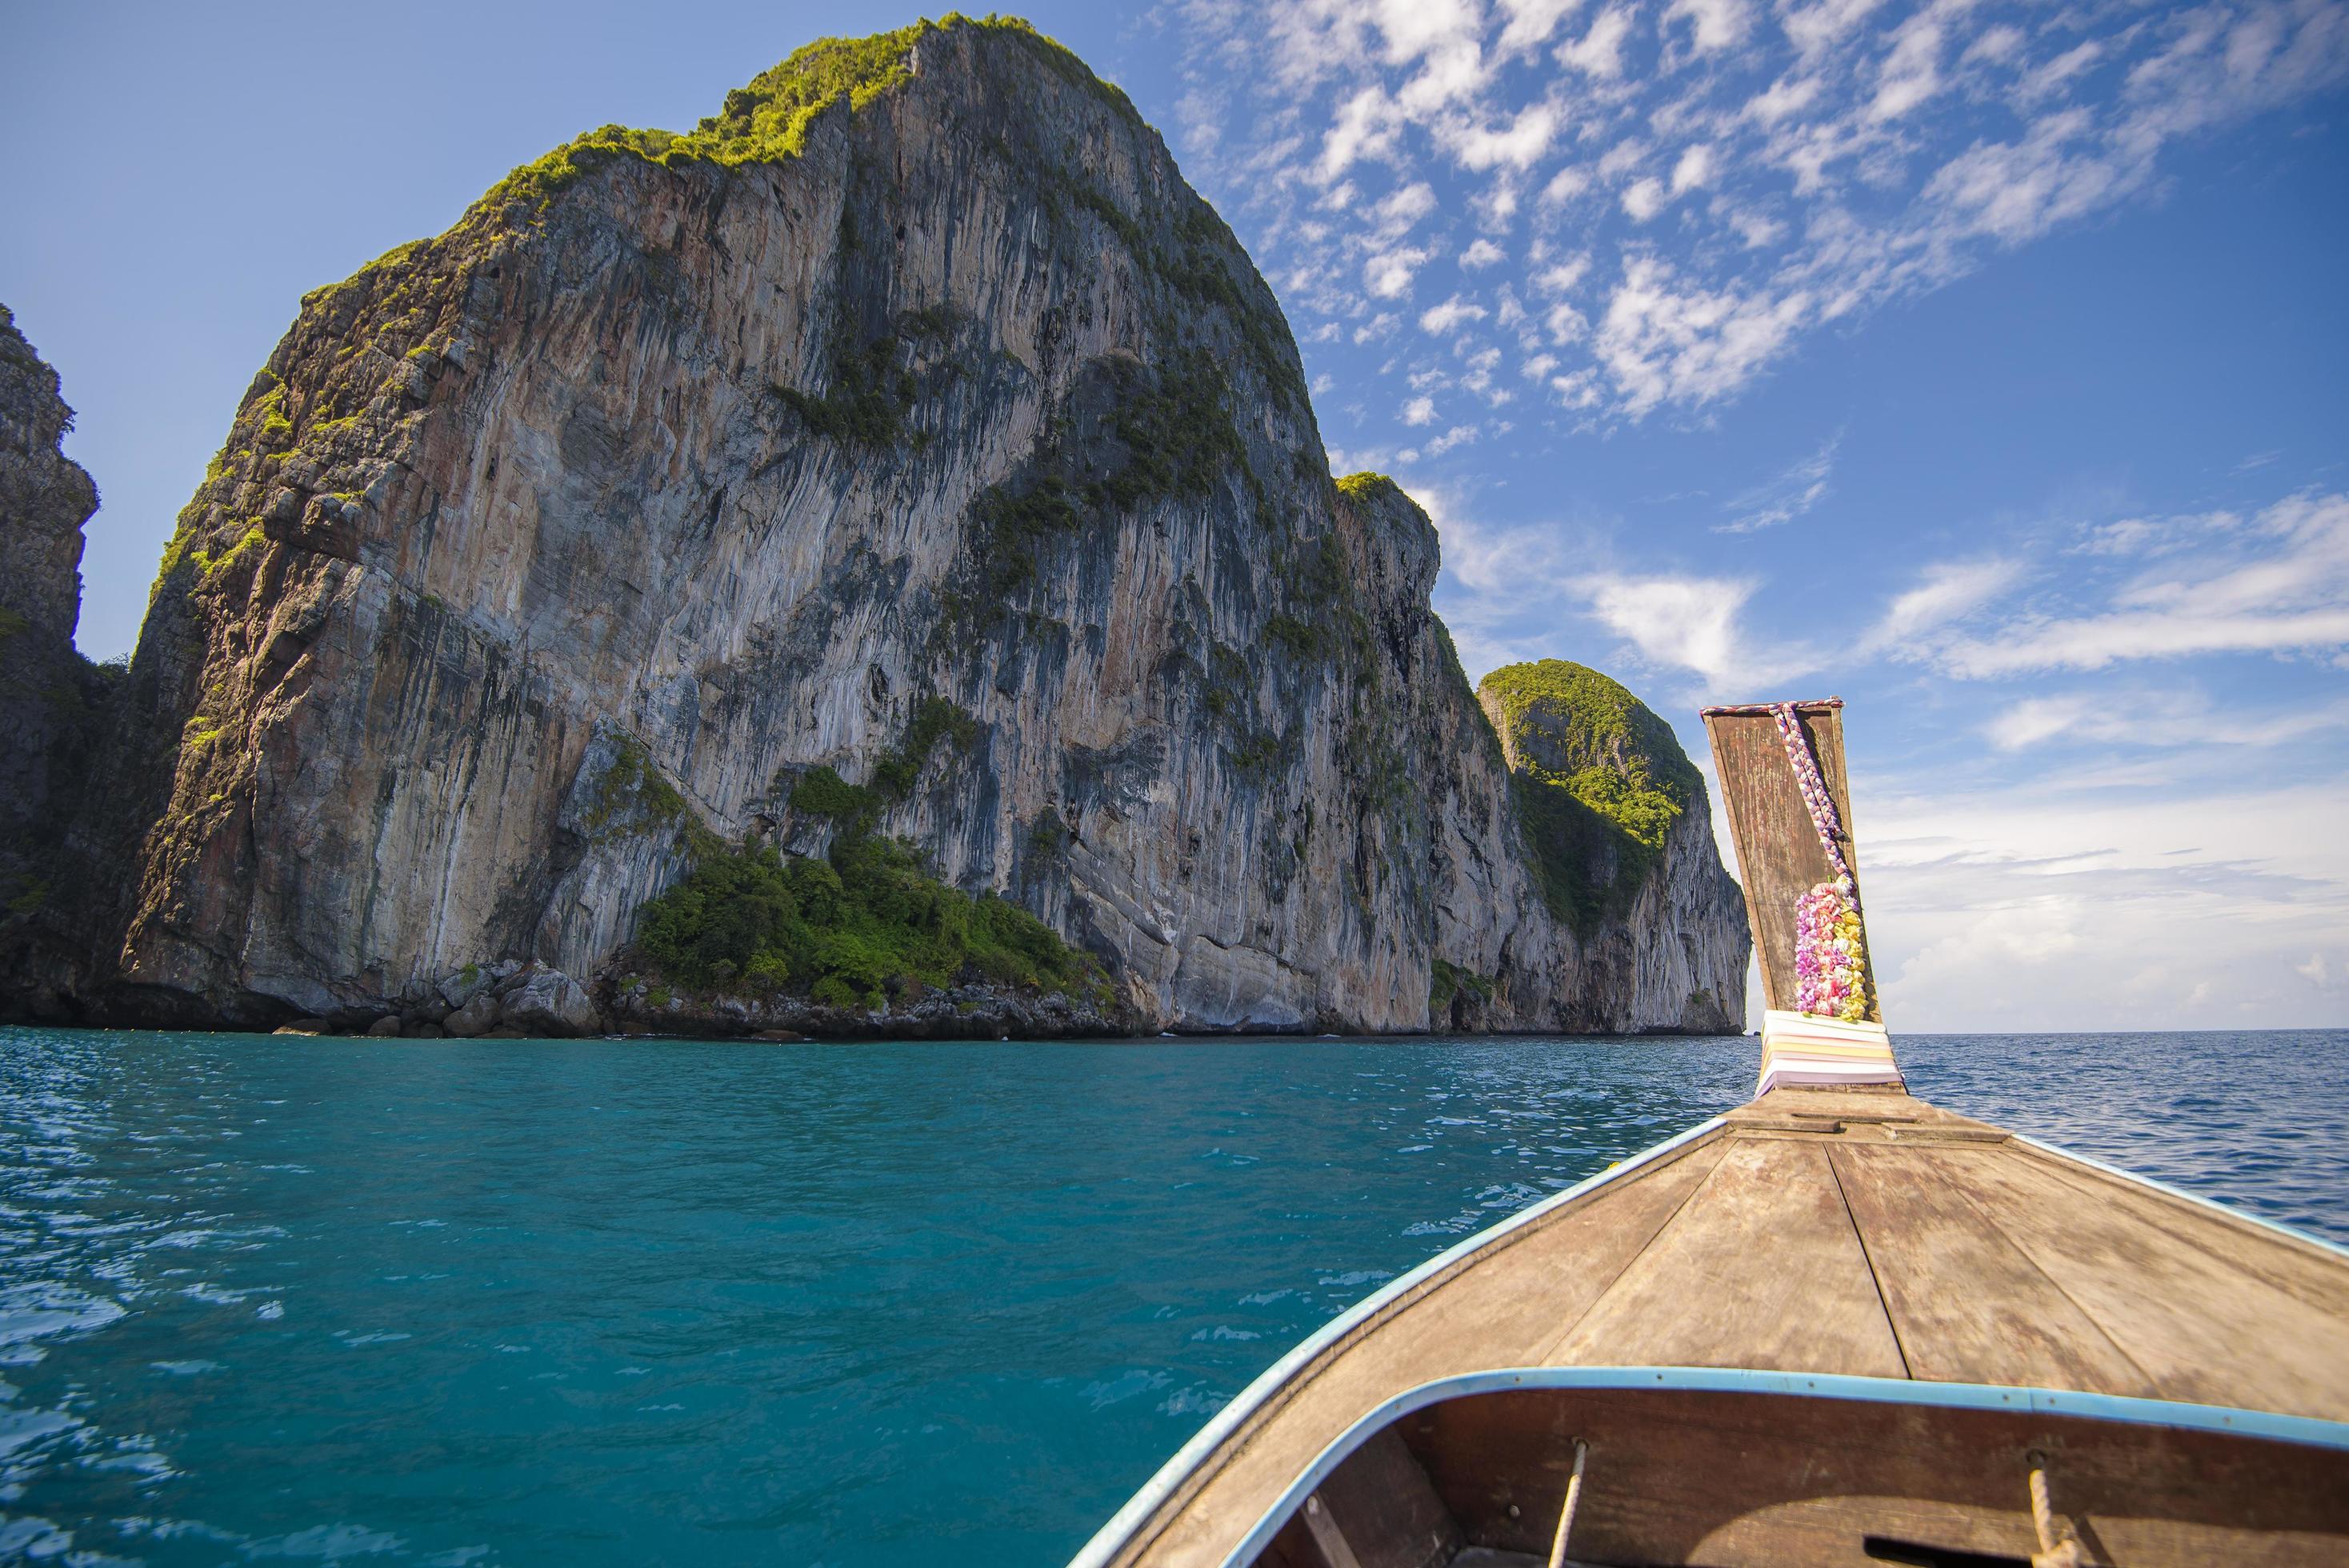 Blick auf großen Felsen vom Longtail-Boot in Thailand. foto